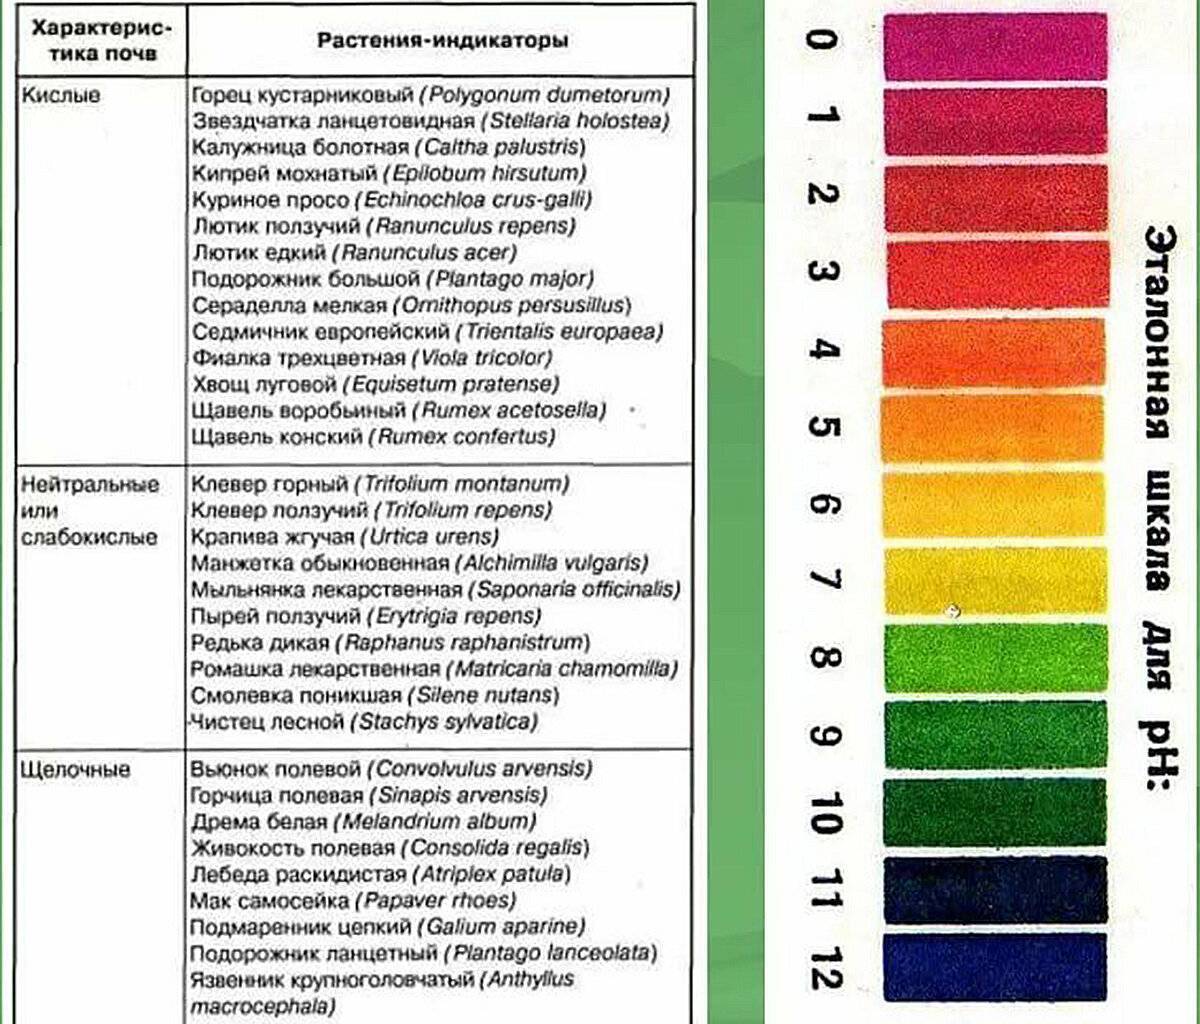 Критерии качества грунта для цитрусовых, состав и необходимая кислотность почвы